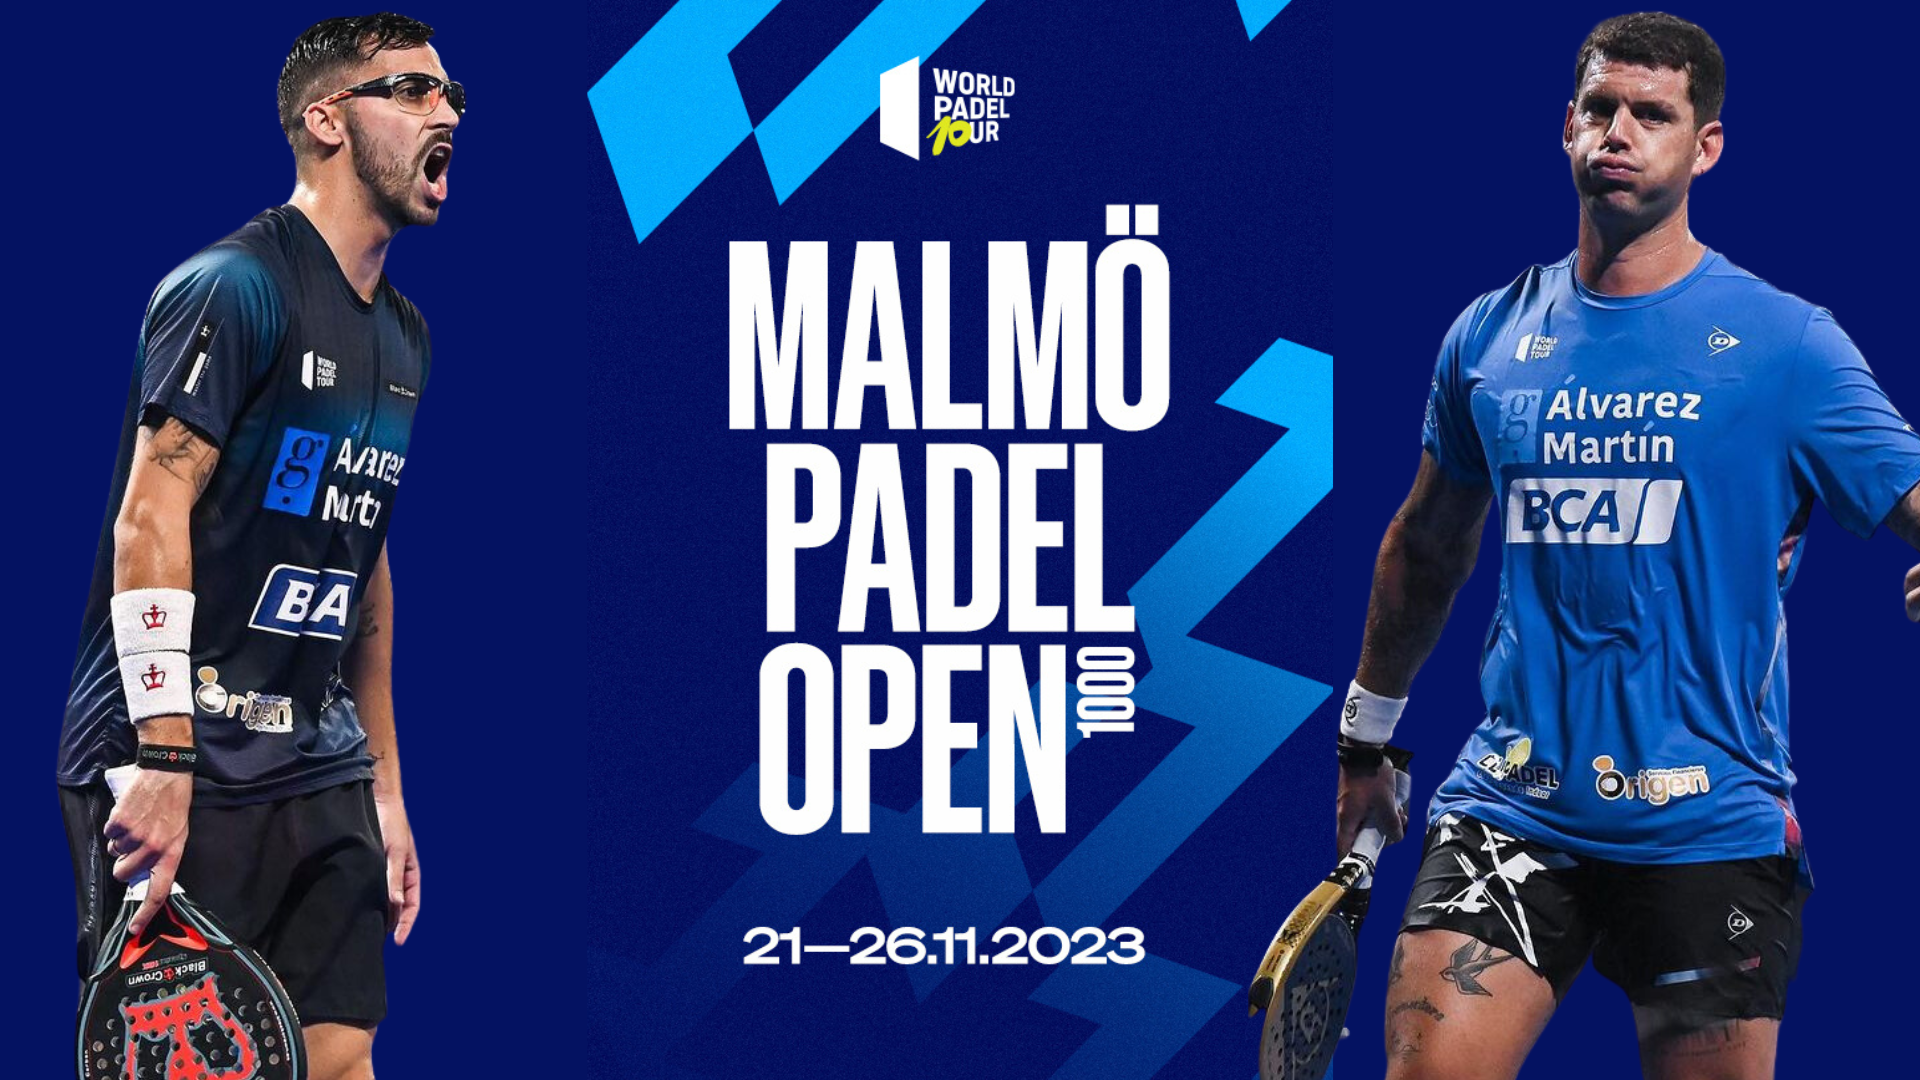 Moyano Gil cuadros Malmö Open WPT 2023